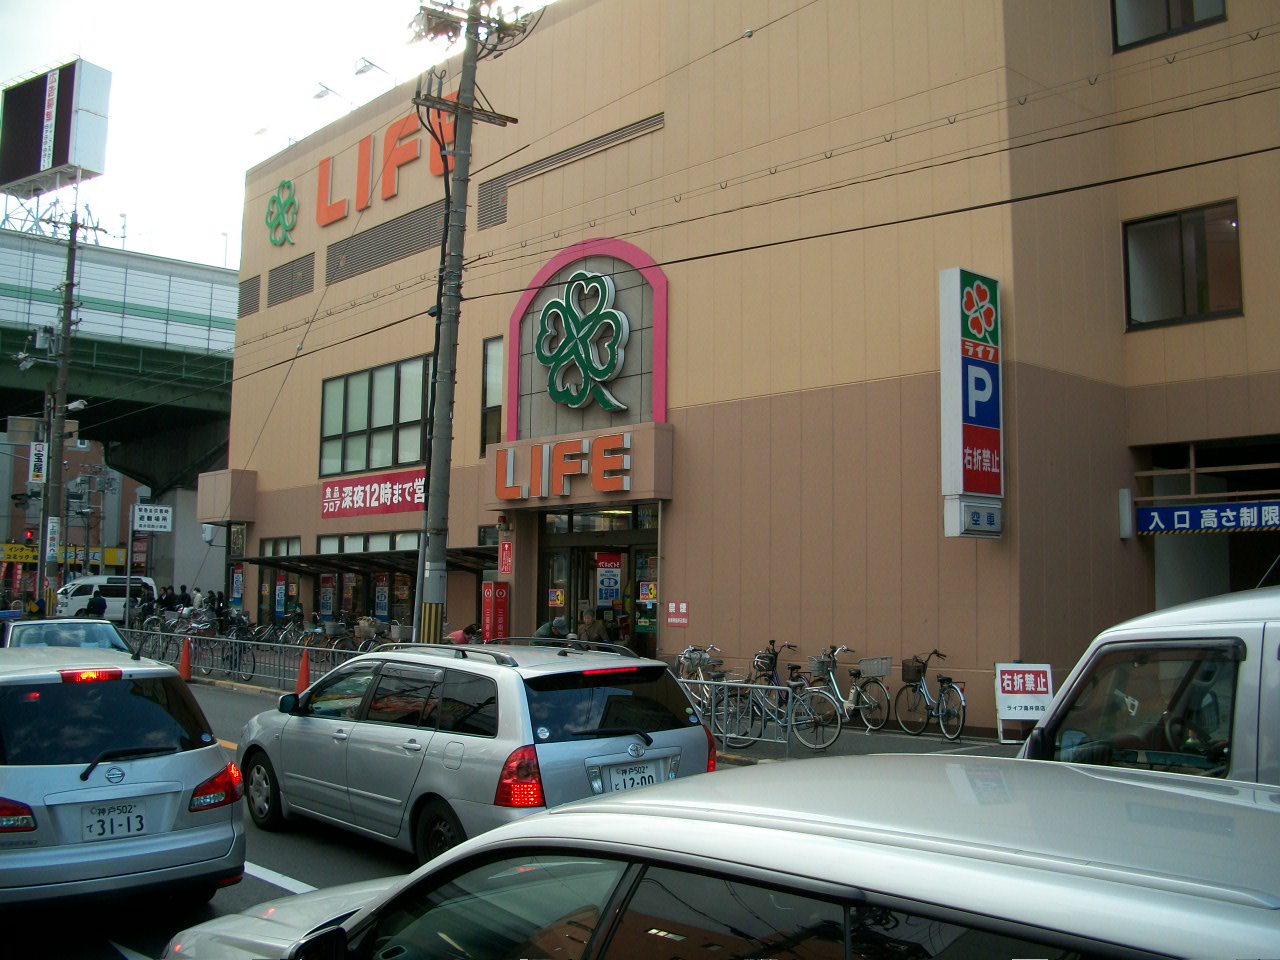 Supermarket. 737m up to life Takaida store (Super)